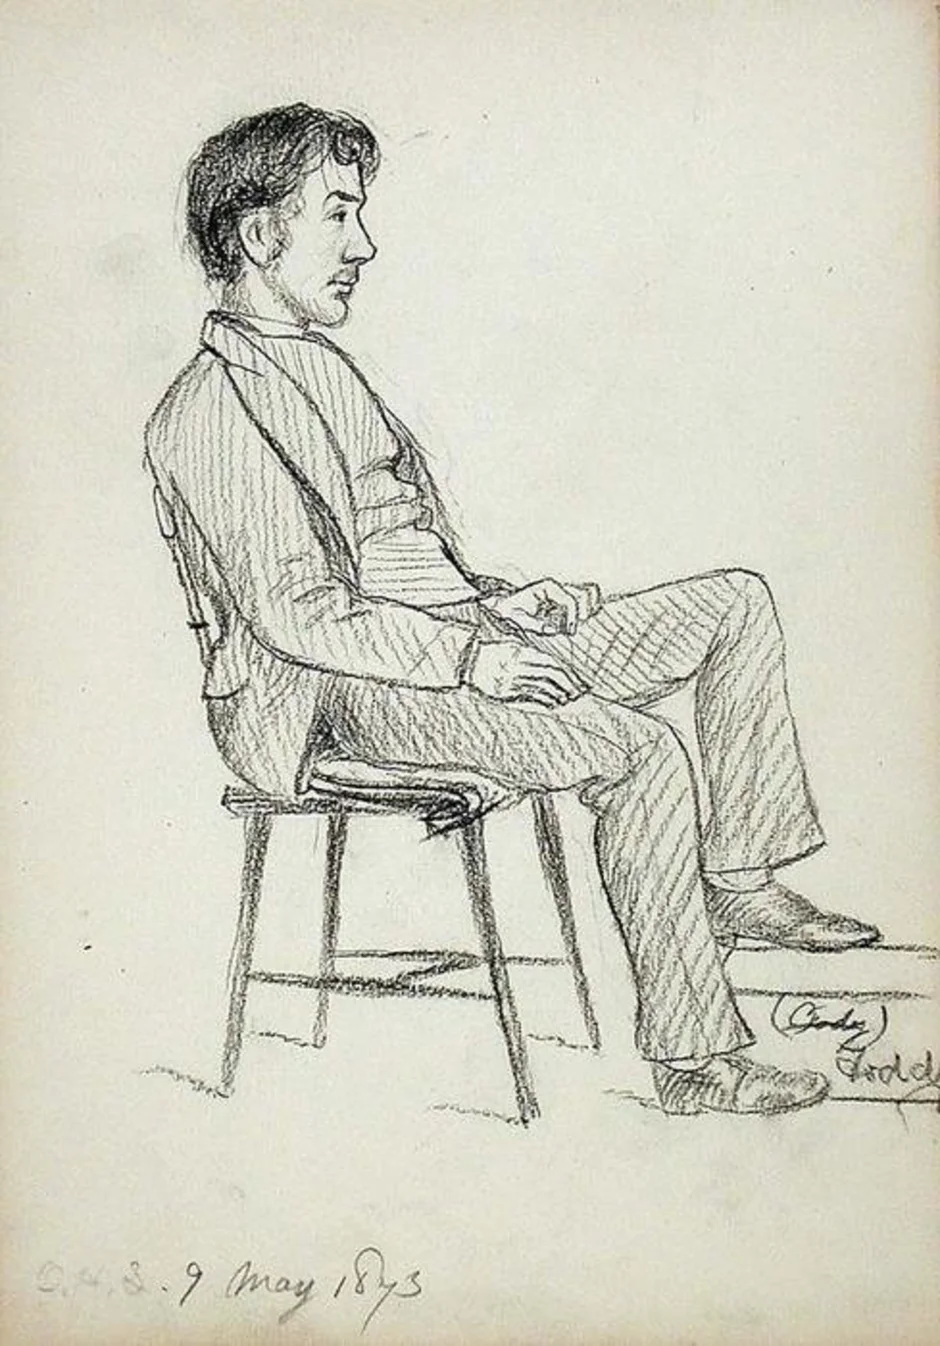 Рисование сидящего человека